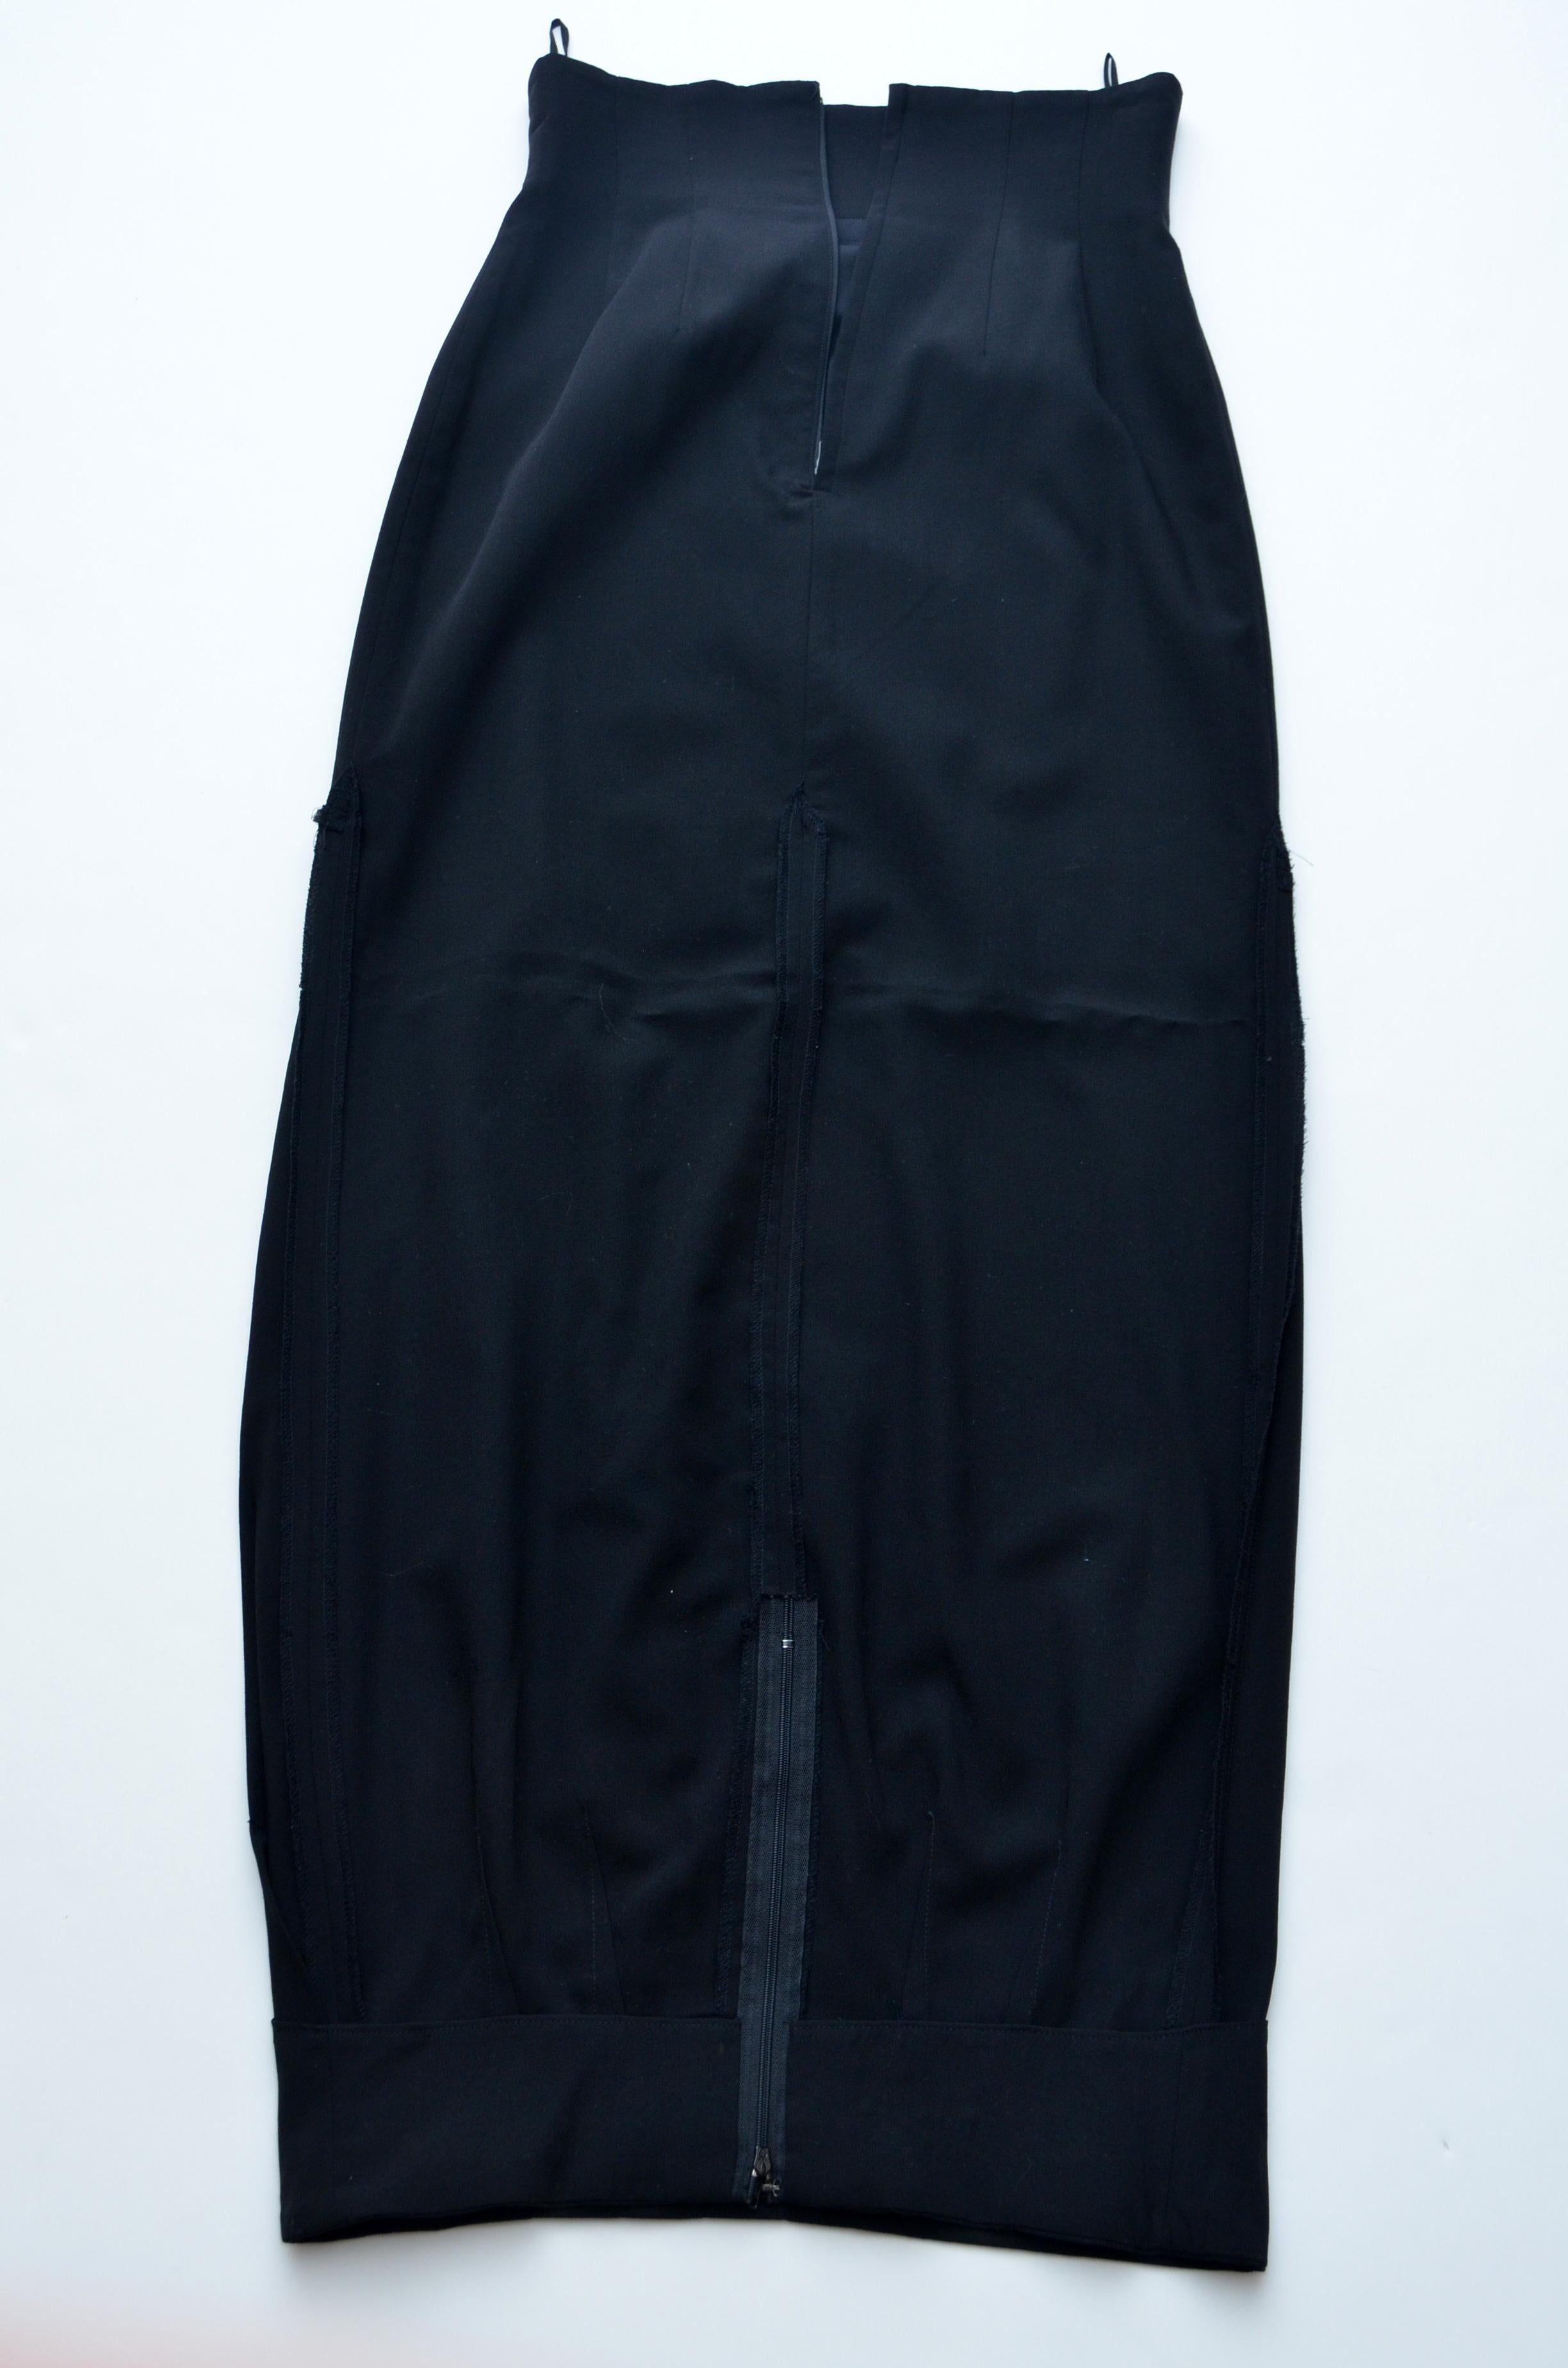 Rare Comme Des Garçons AD1990 Upside Down Long Black Skirt  
La moitié supérieure de la jupe est doublée et le bas non.
Le haut de la jupe a des bords finis et le bas de la jupe a des bords non finis.
Un design très inhabituel  elle ressemble à deux